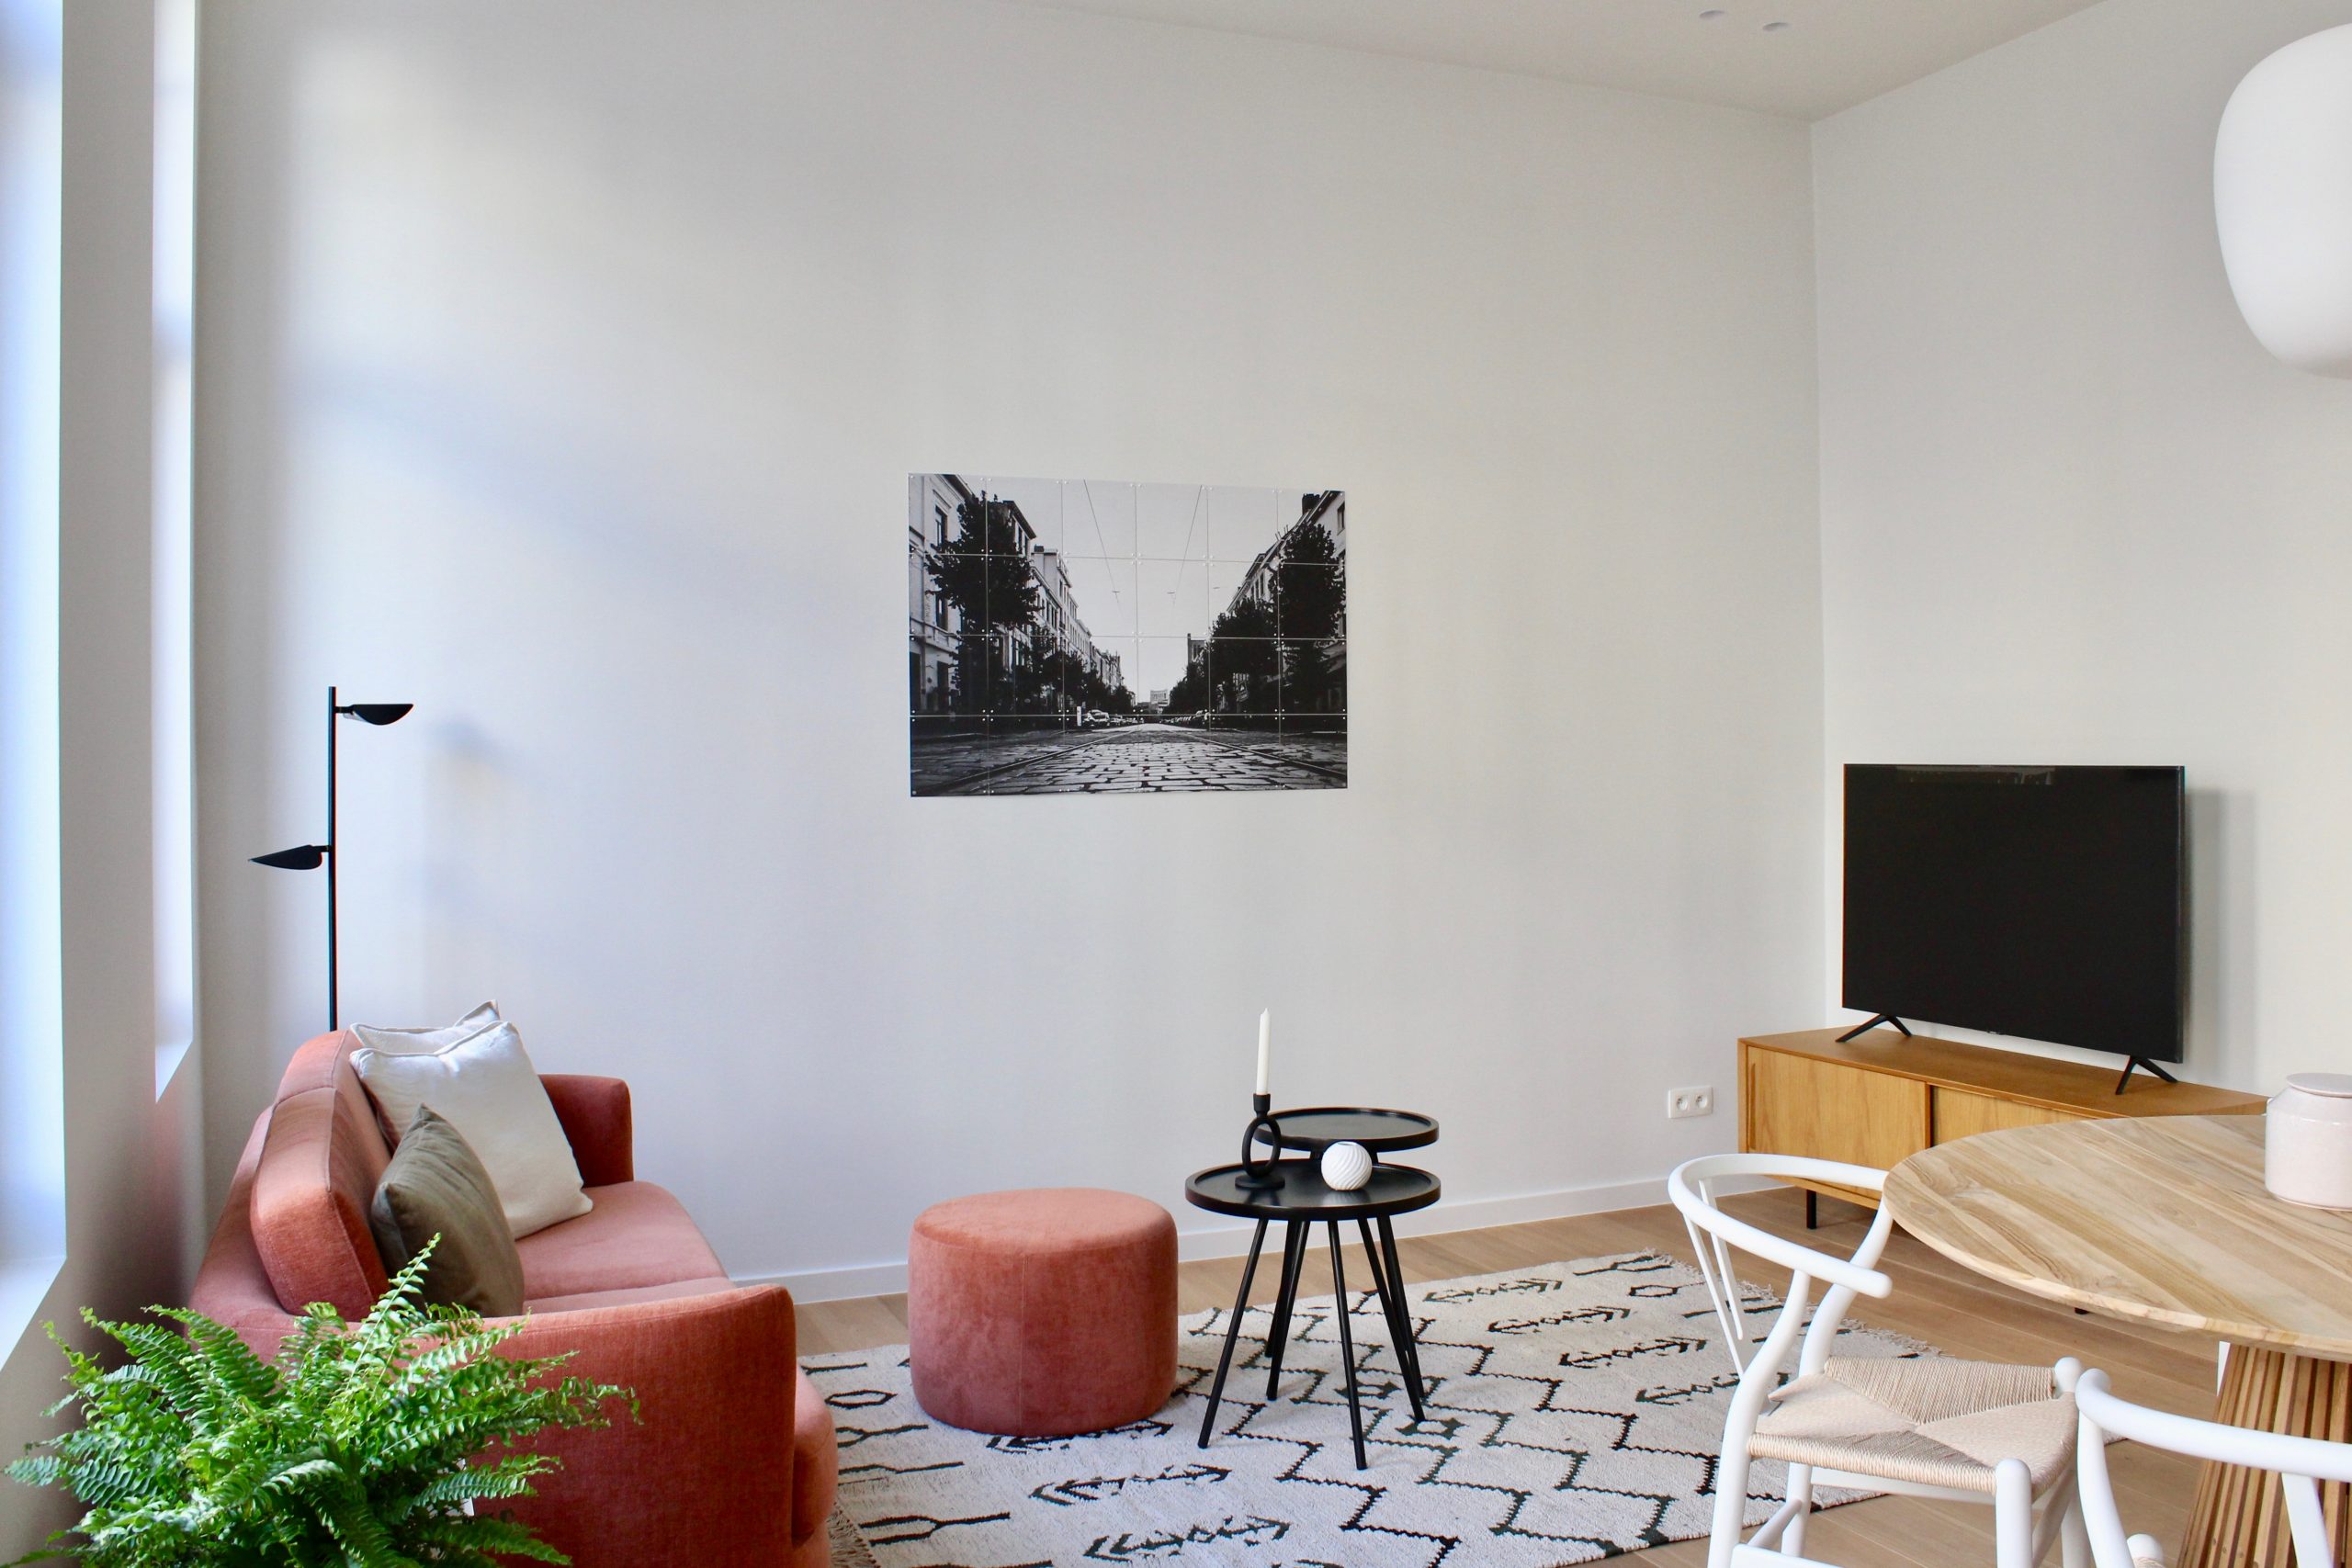 Lemmé - Luxury expat apartment in Antwerp